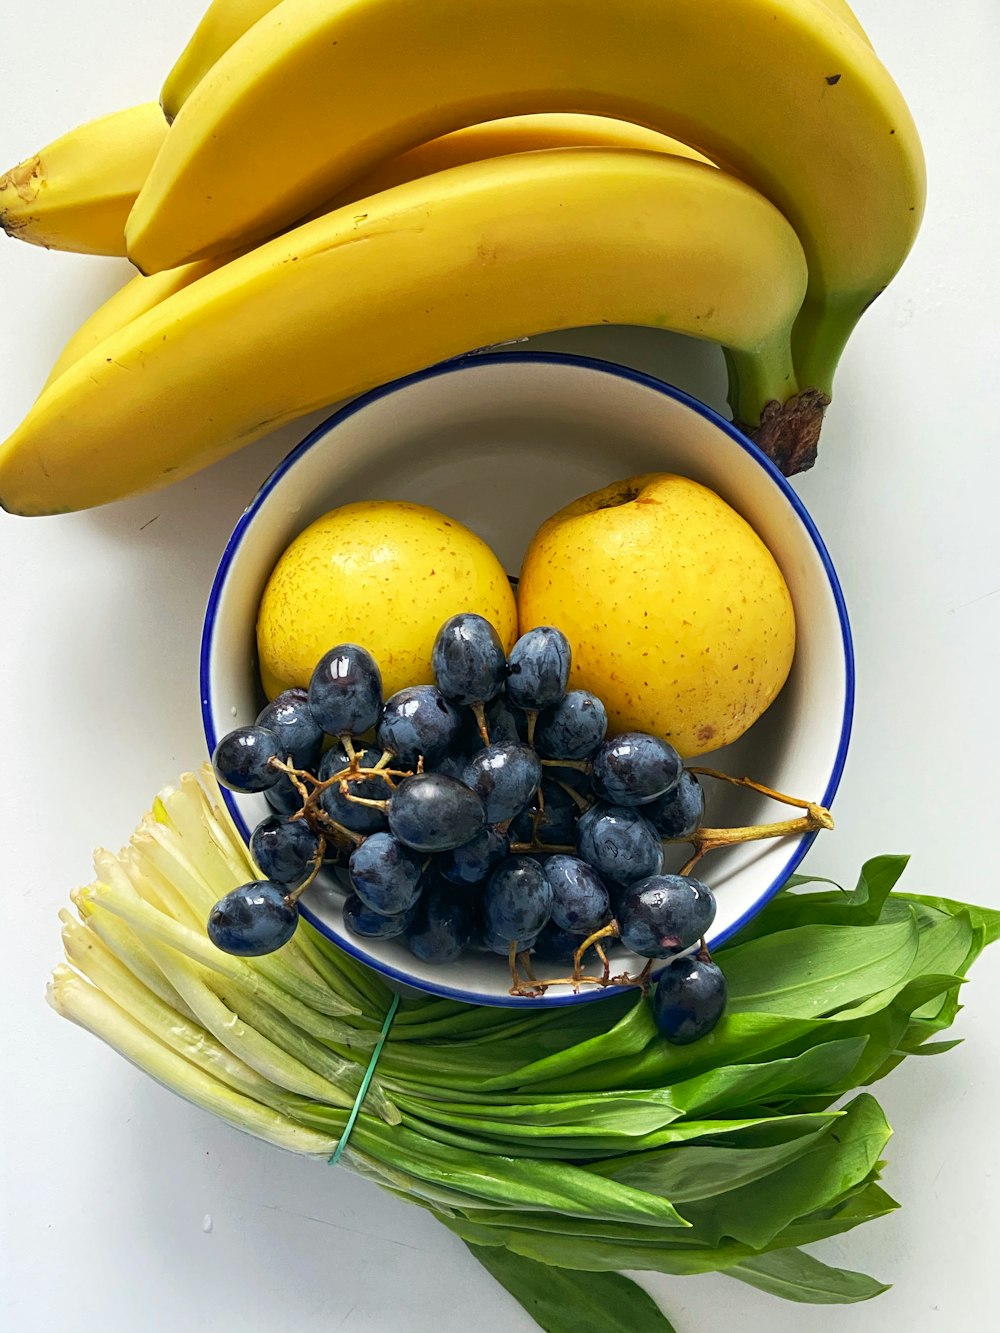 블루 세라믹 그릇에 담긴 노란 바나나와 블루 베리